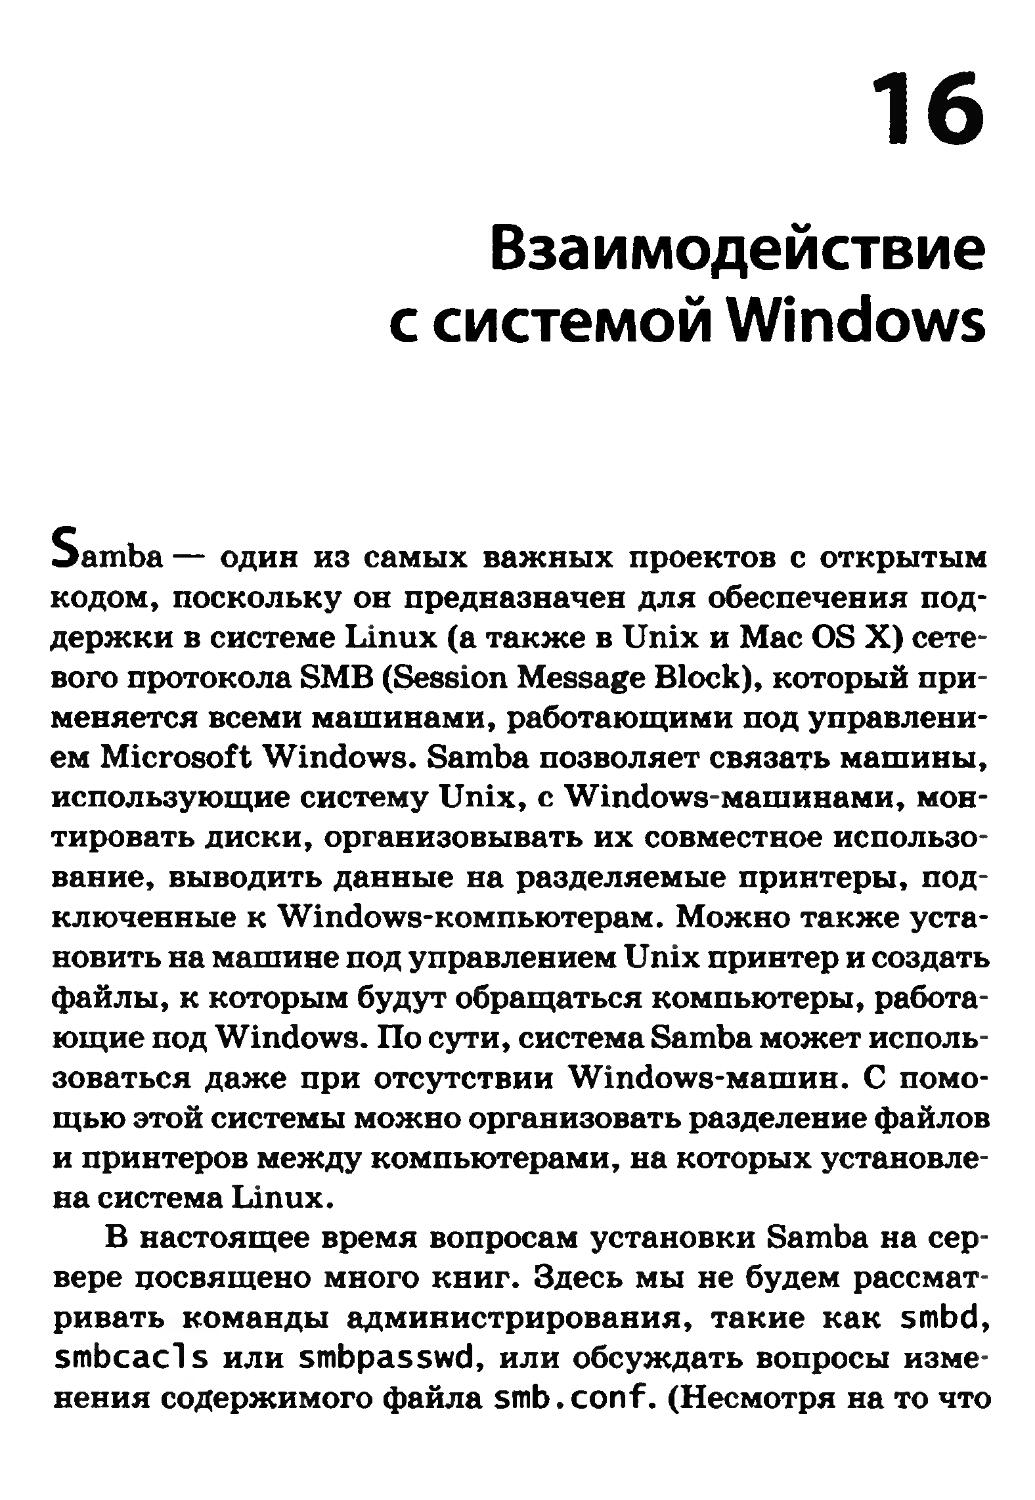 Глава 16. Взаимодействие с системой Windows